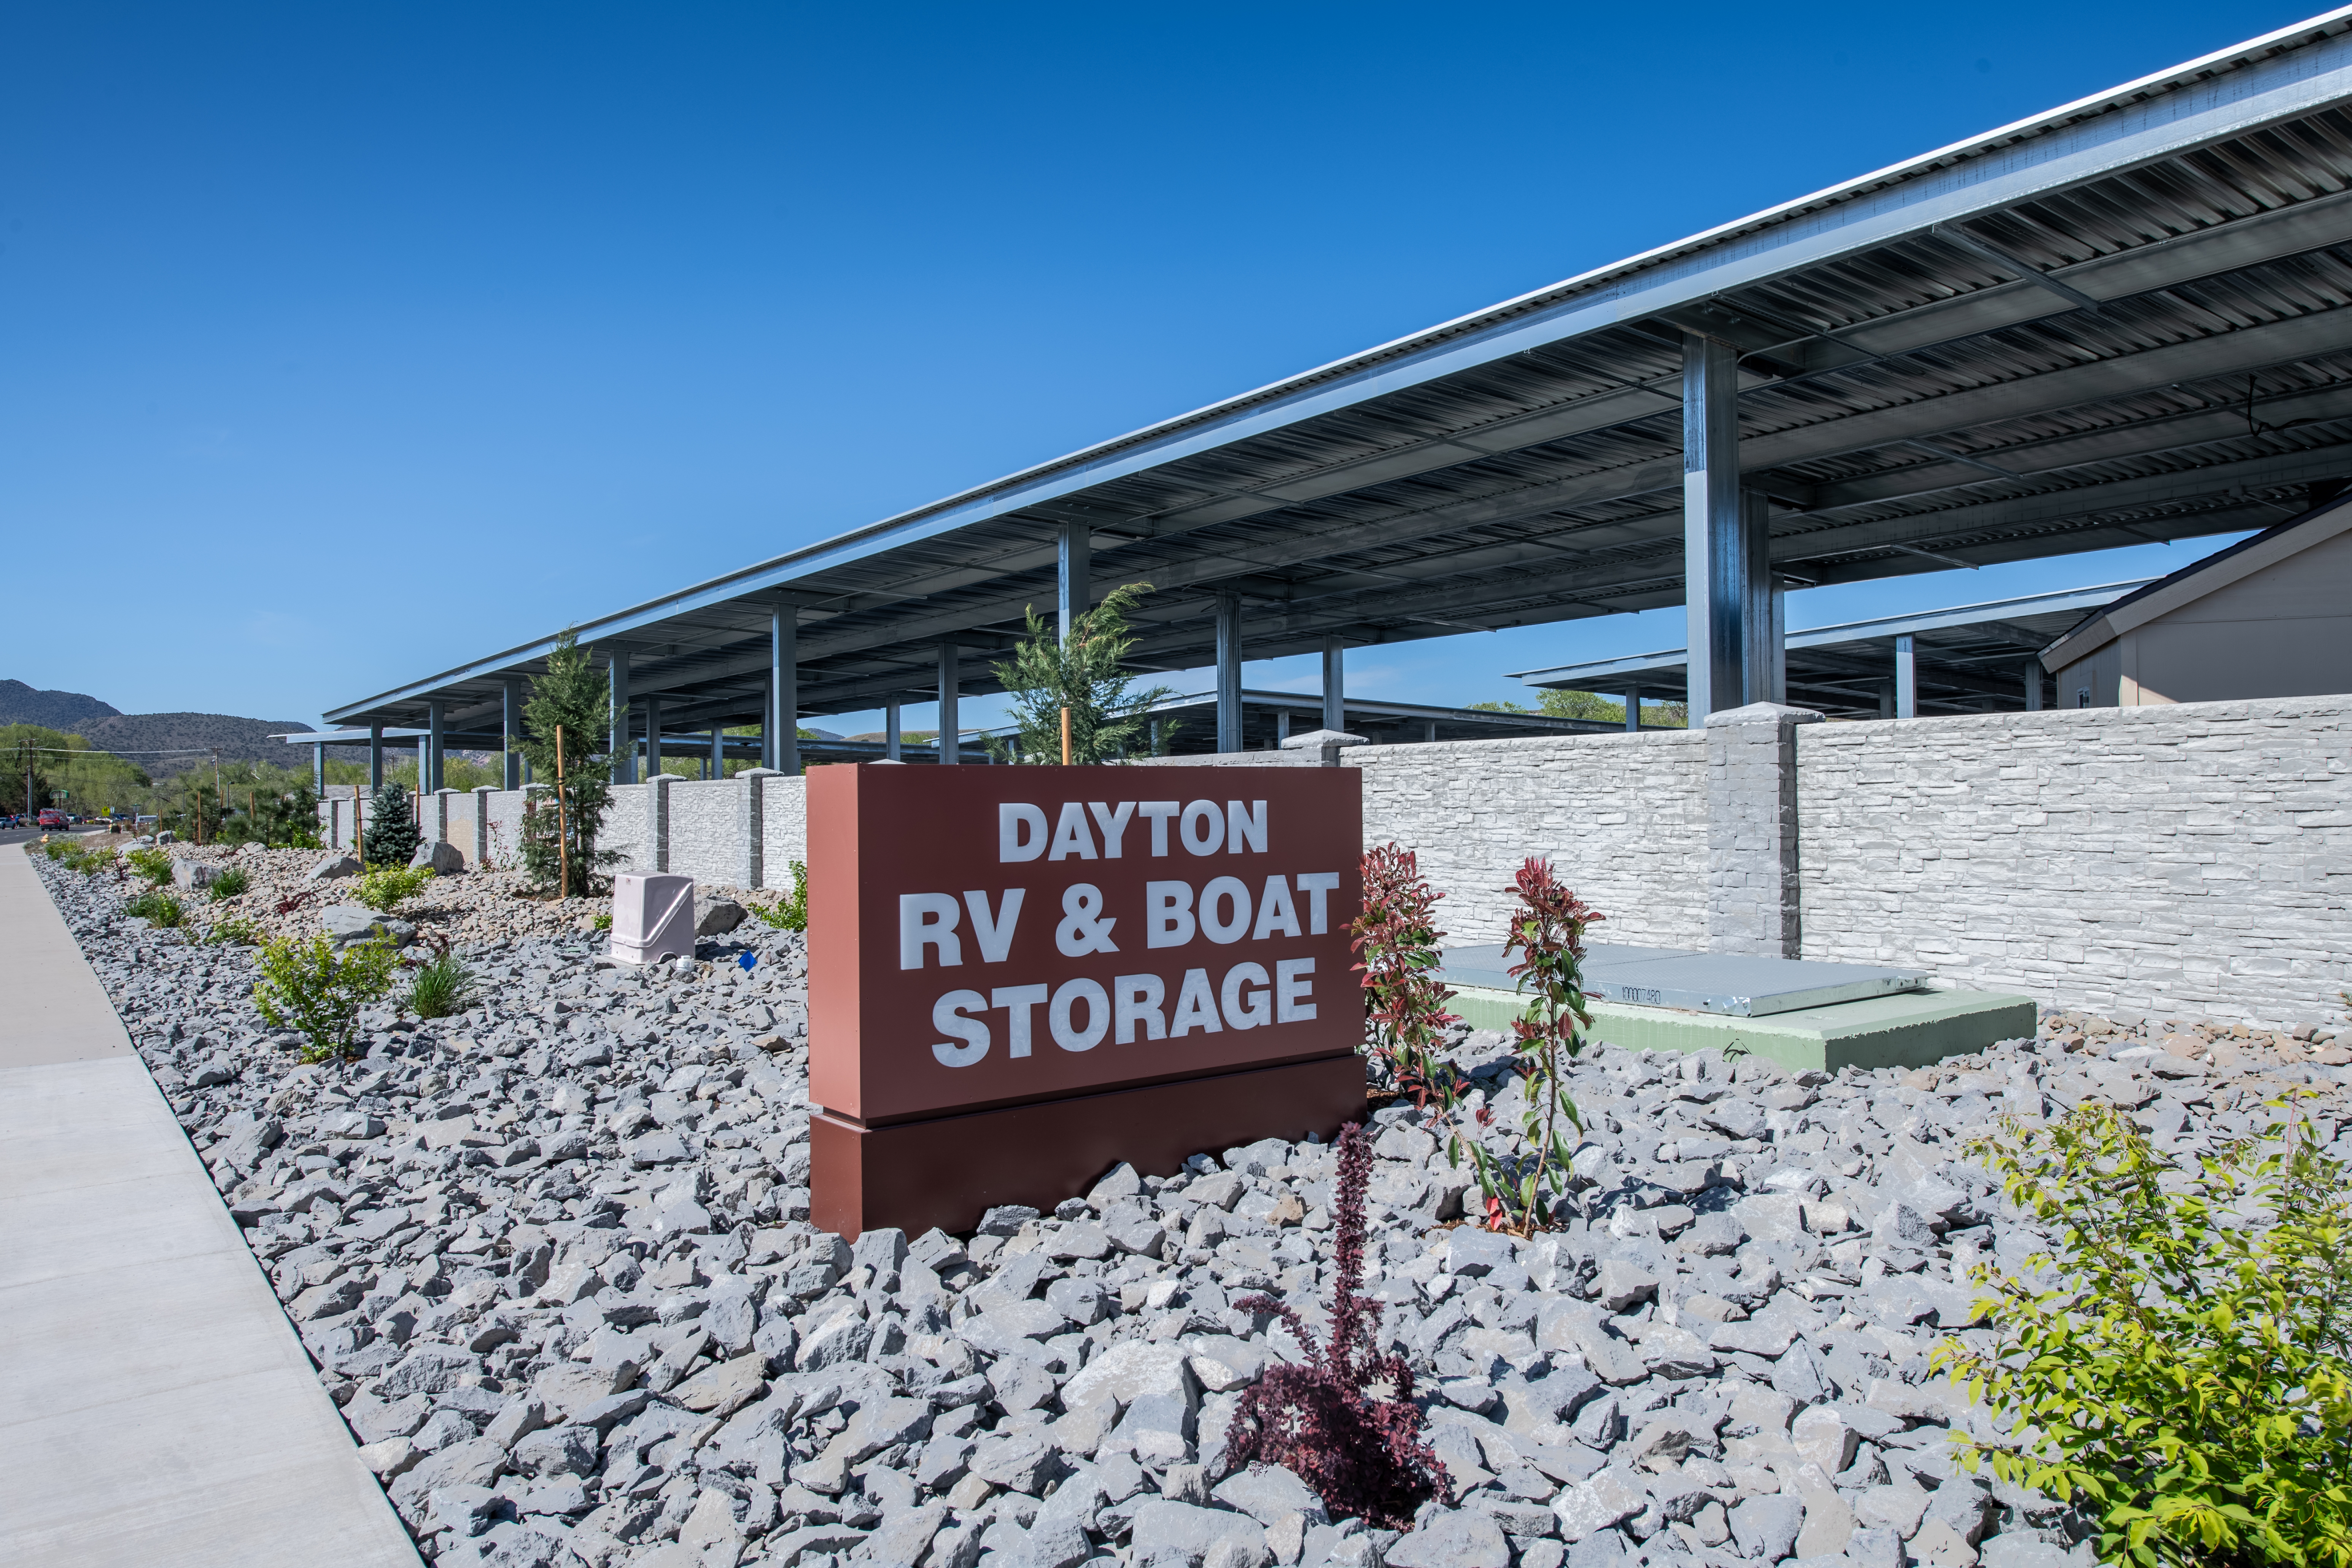 Dayton RV and Boat Storage